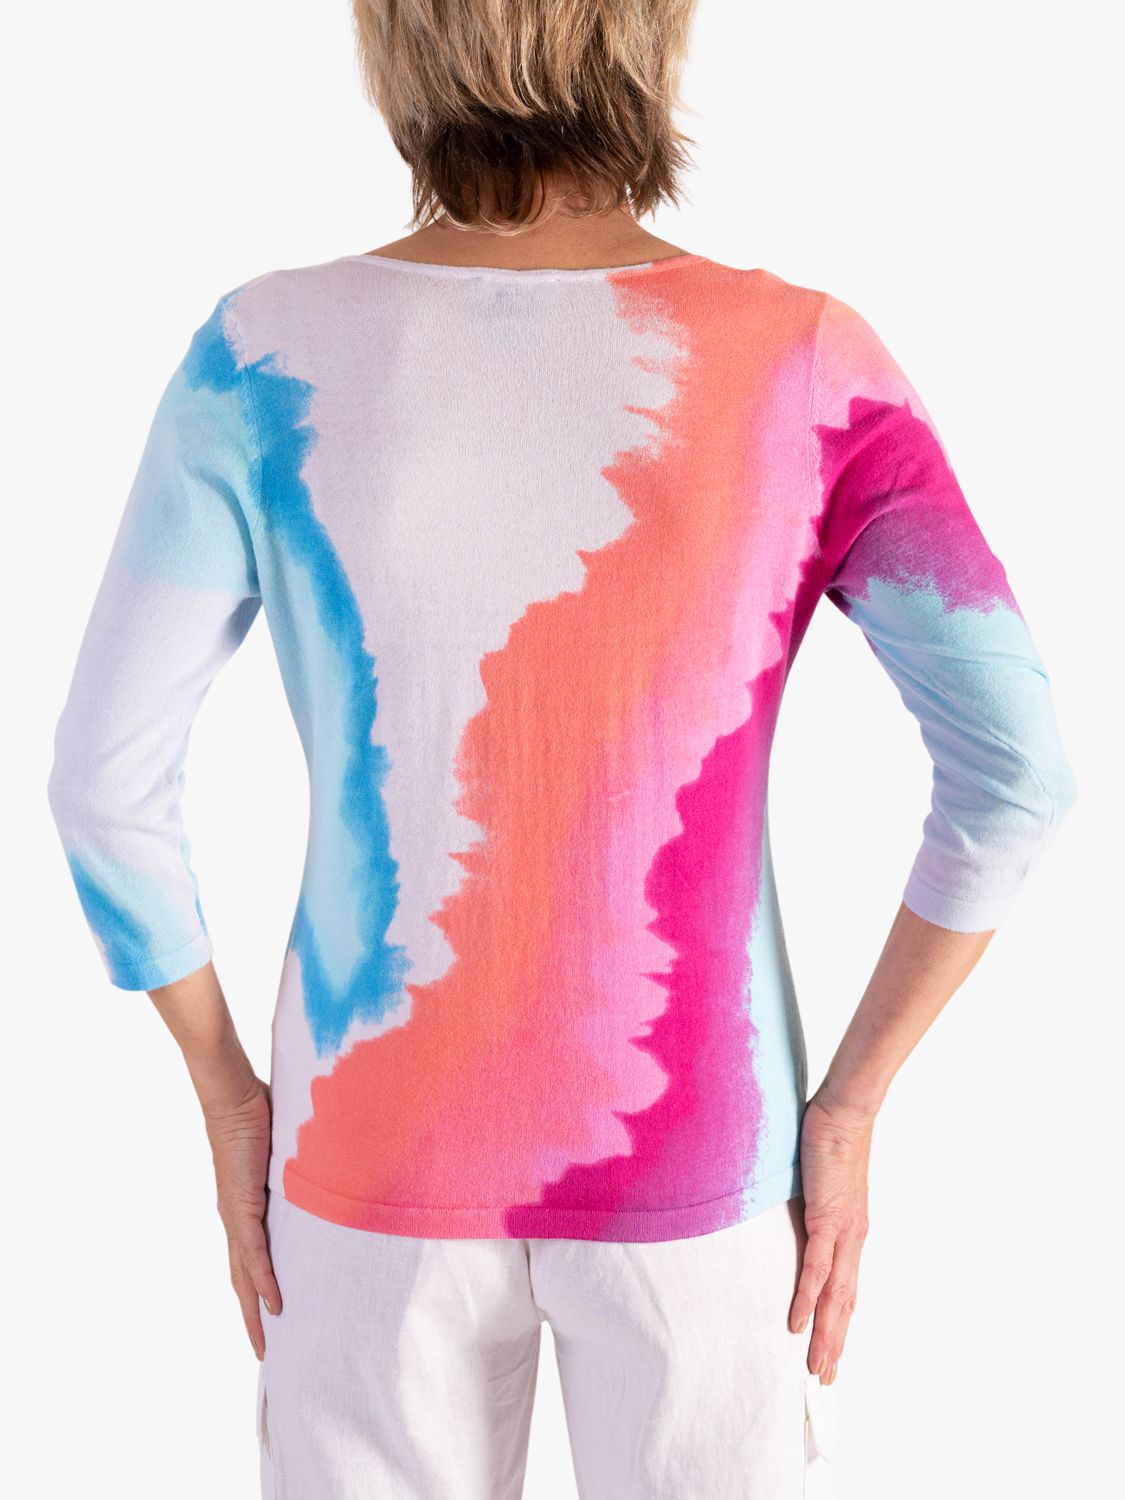 chesca Watercolour Pastels Fine Knit Jumper, White/Multi, 12-14